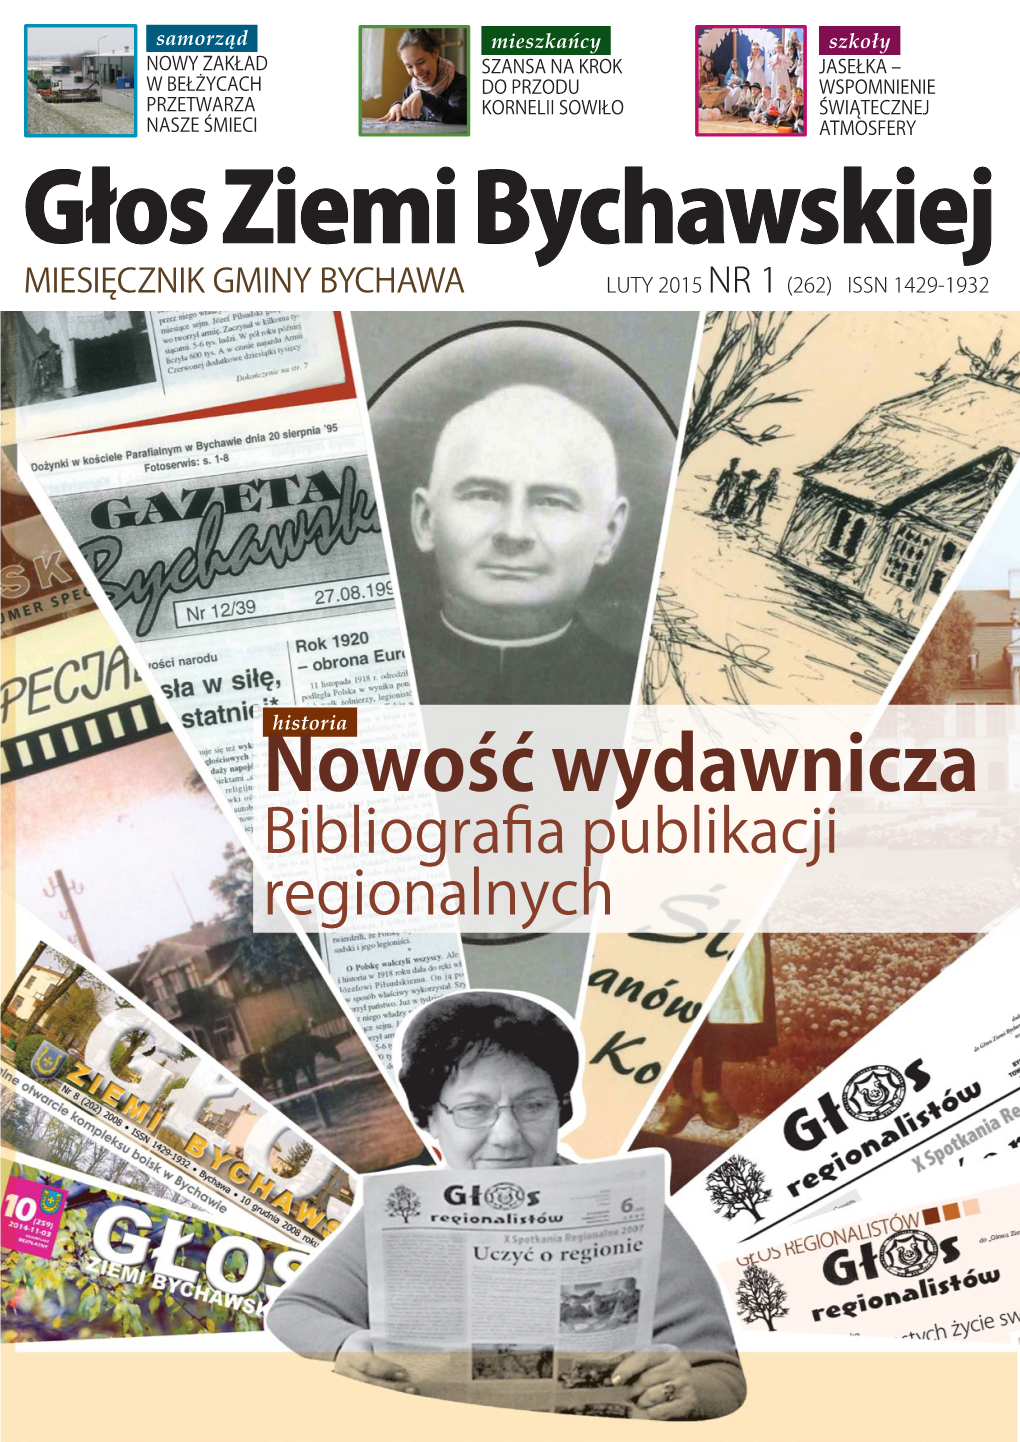 Głos Ziemi Bychawskiej MIESIĘCZNIK GMINY BYCHAWA LUTY 2015 NR 1 (262) ISSN 1429-1932